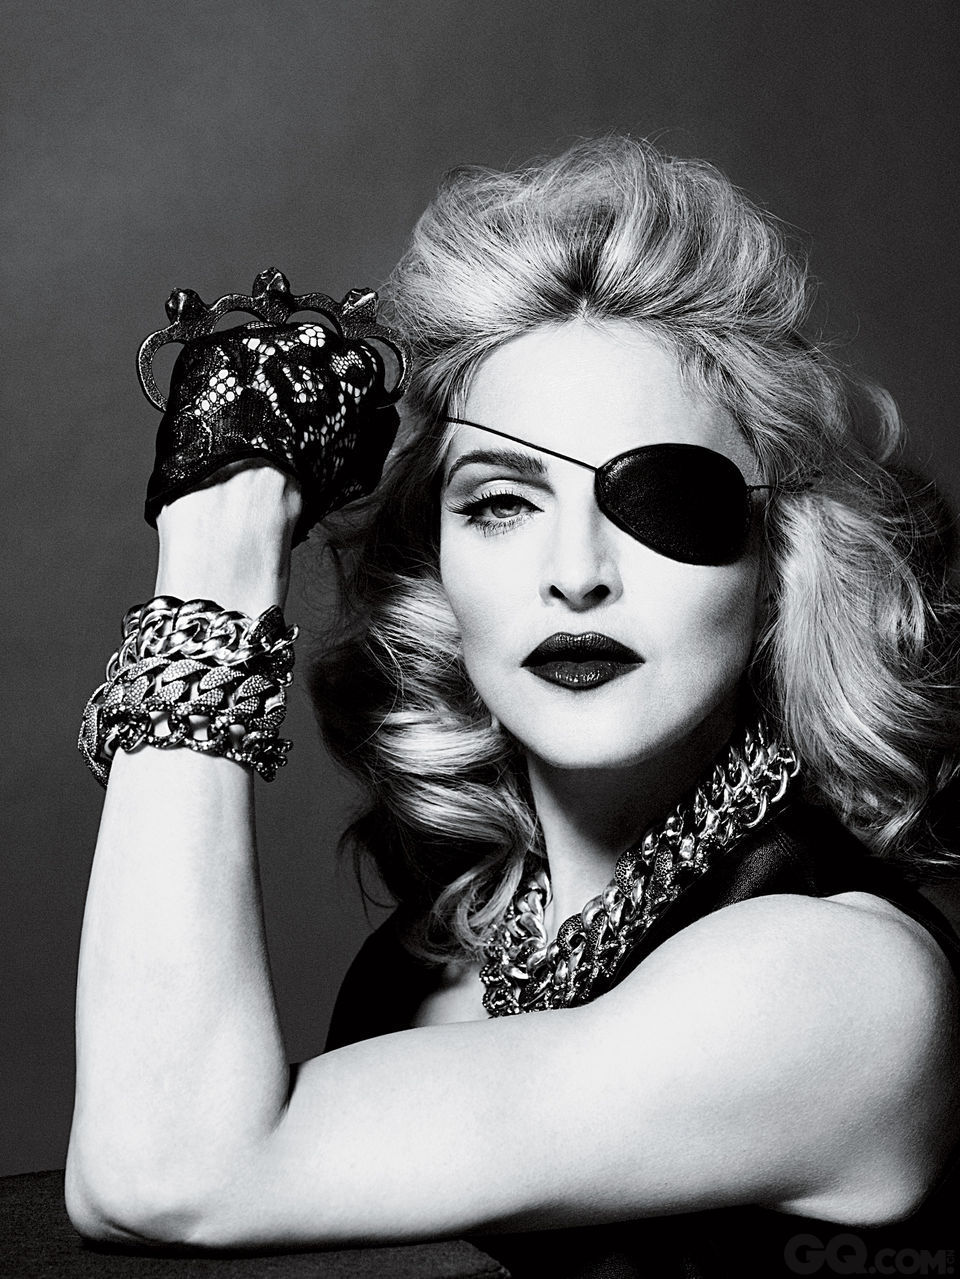 8.麦当娜 (Madonna) – 140
根据StarMap，麦当娜曾就读密西根大学音乐舞蹈戏剧学院，虽然没顺利毕业，但为了搬去纽约市开始追求自己在现代舞这一行的梦想，没读完也算是值得的。毕竟她就是搬去纽约之后才开始走红的啊！同时，她也是个很有商业头脑的聪明投资者，像是在1992年她就创了娱乐公司Maverick赚了不少钱呢！